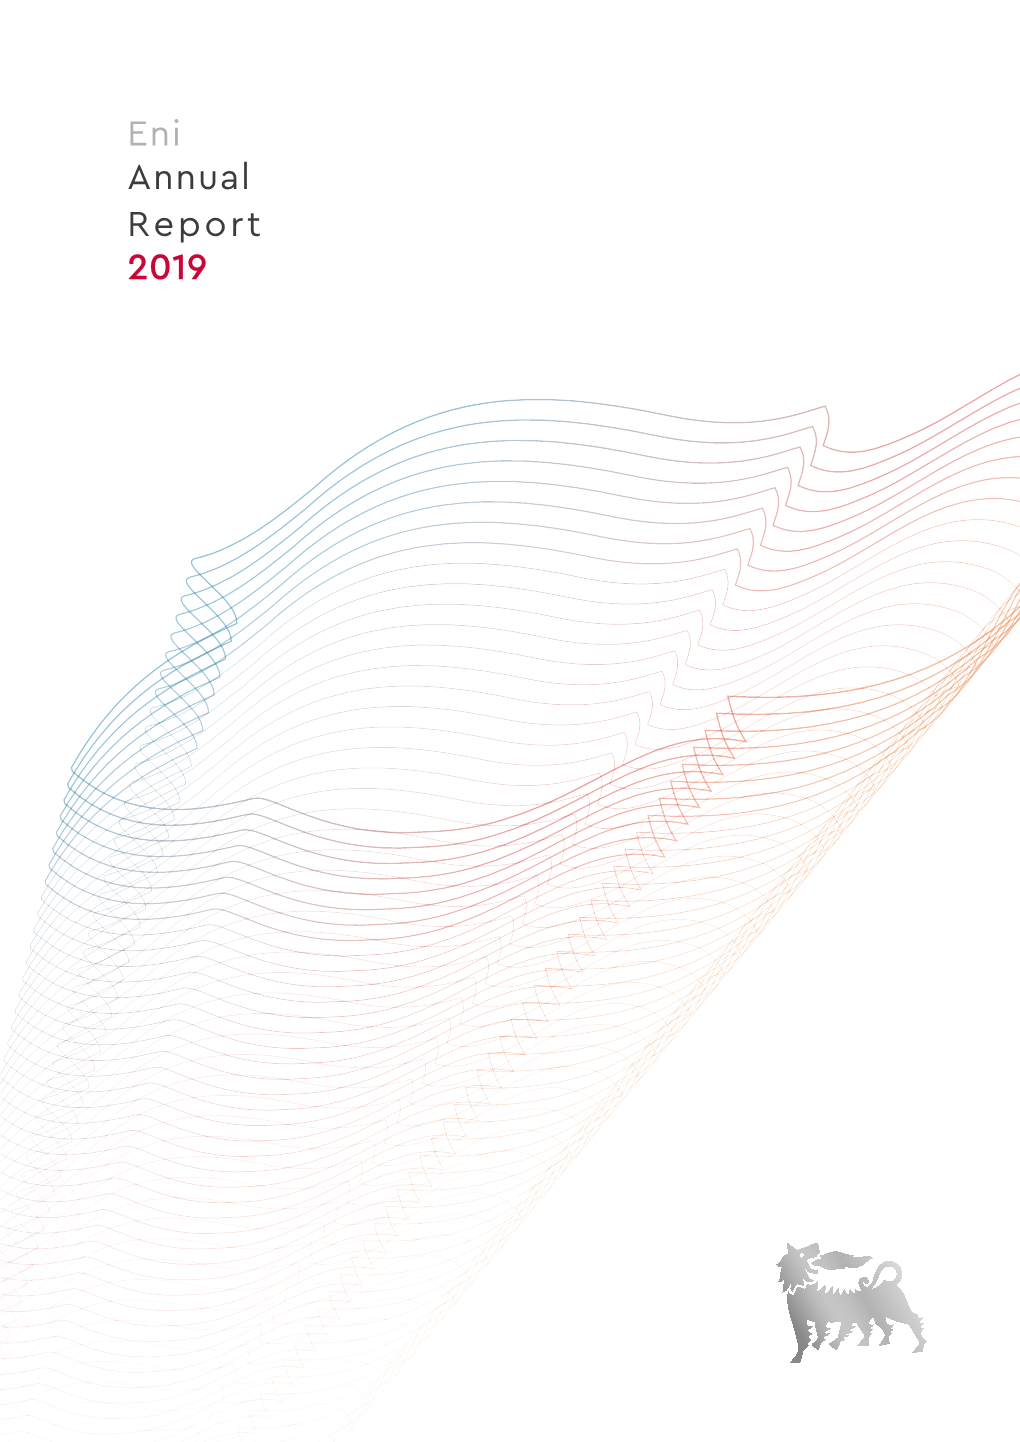 Annual Report 2019 Index